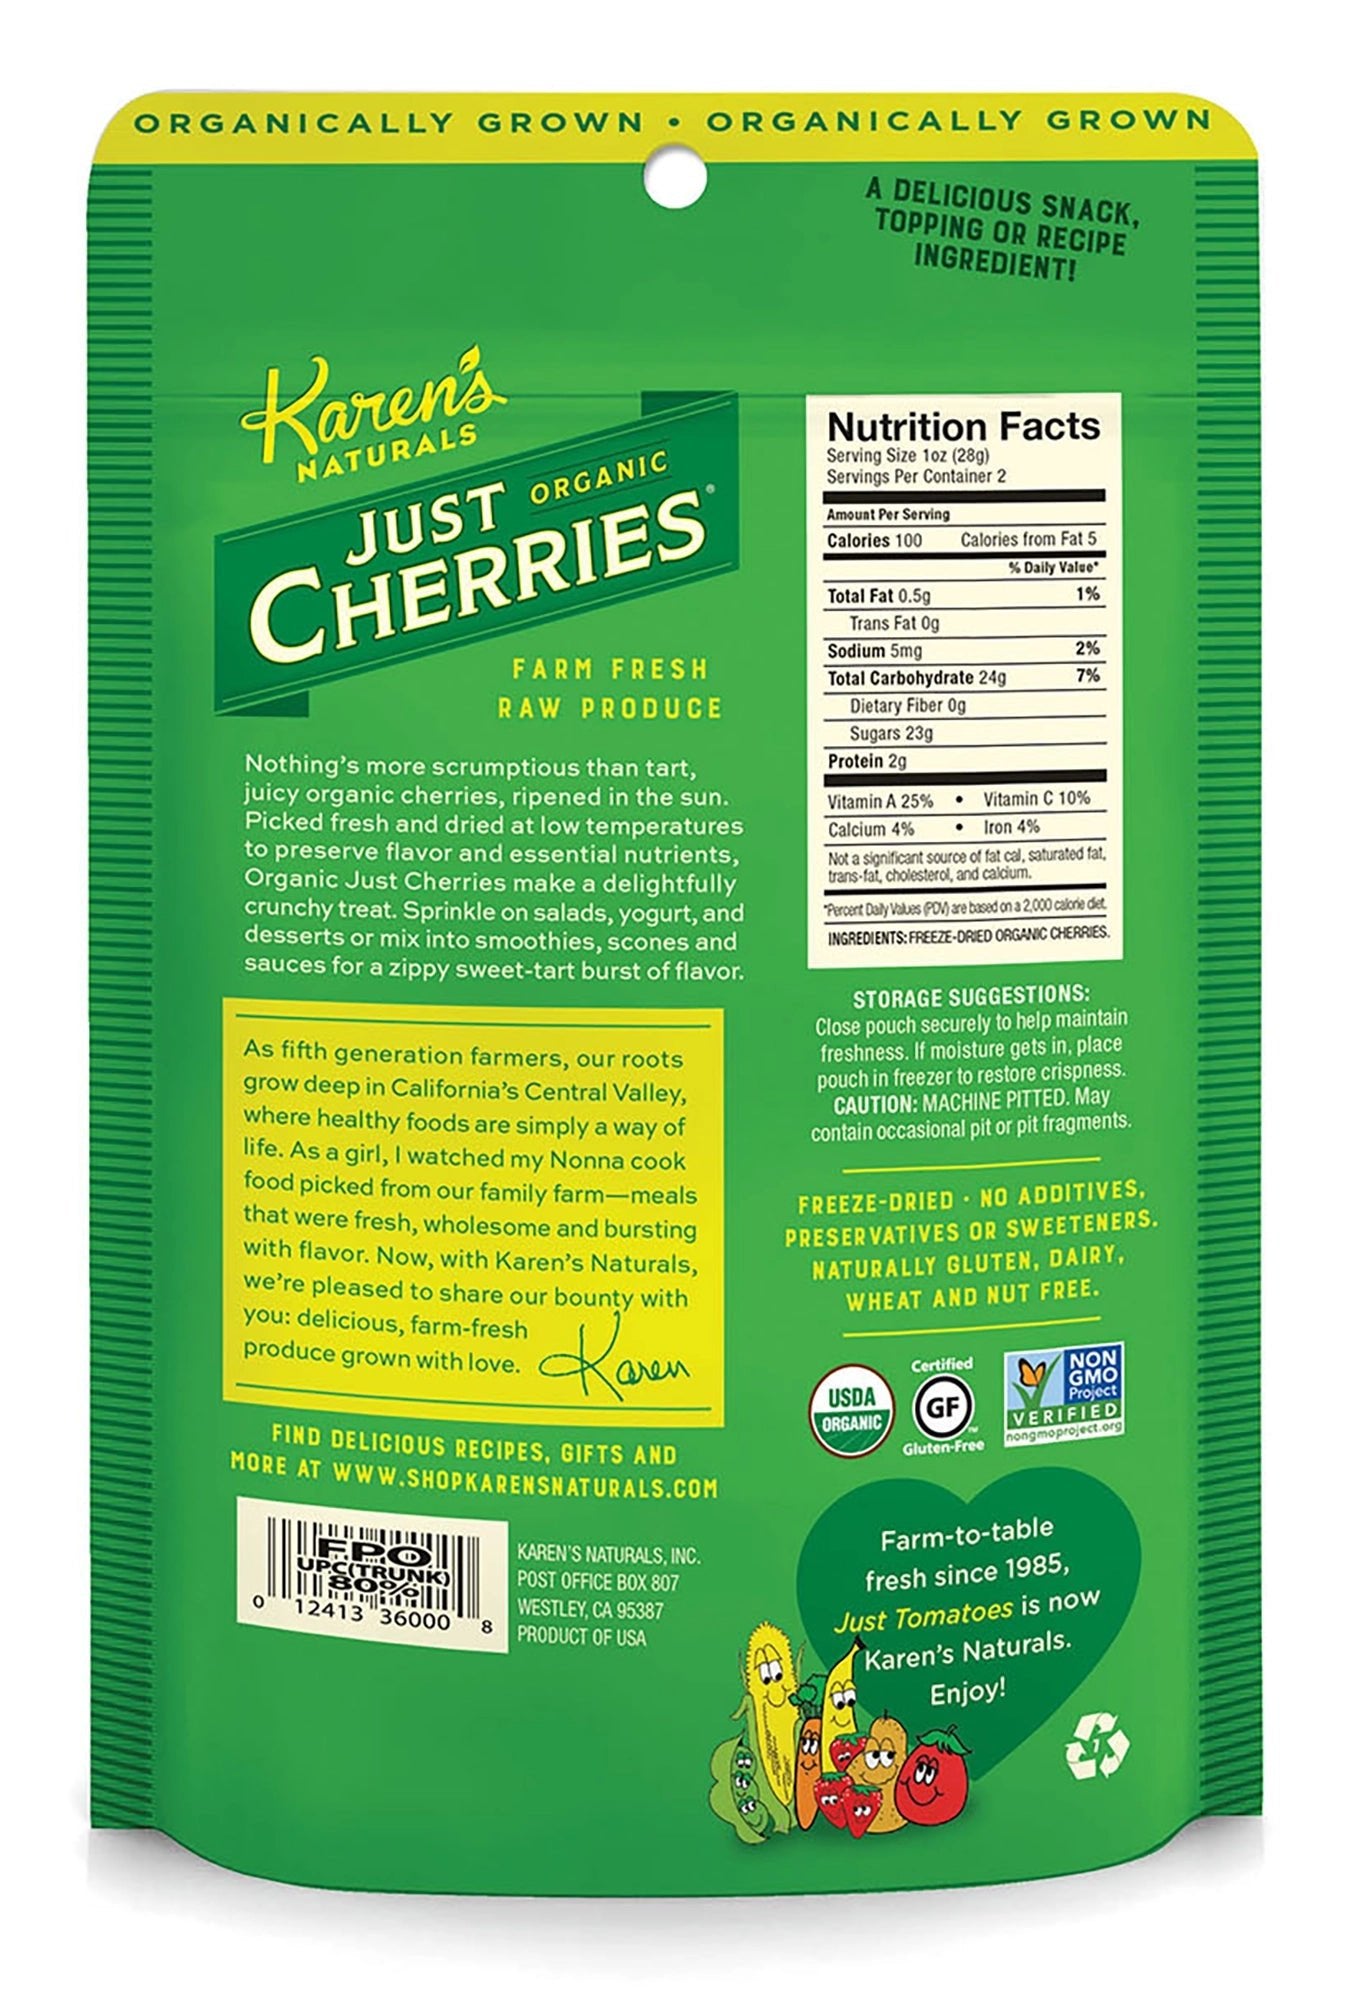 Organic Just Cherries - Karen's Naturals